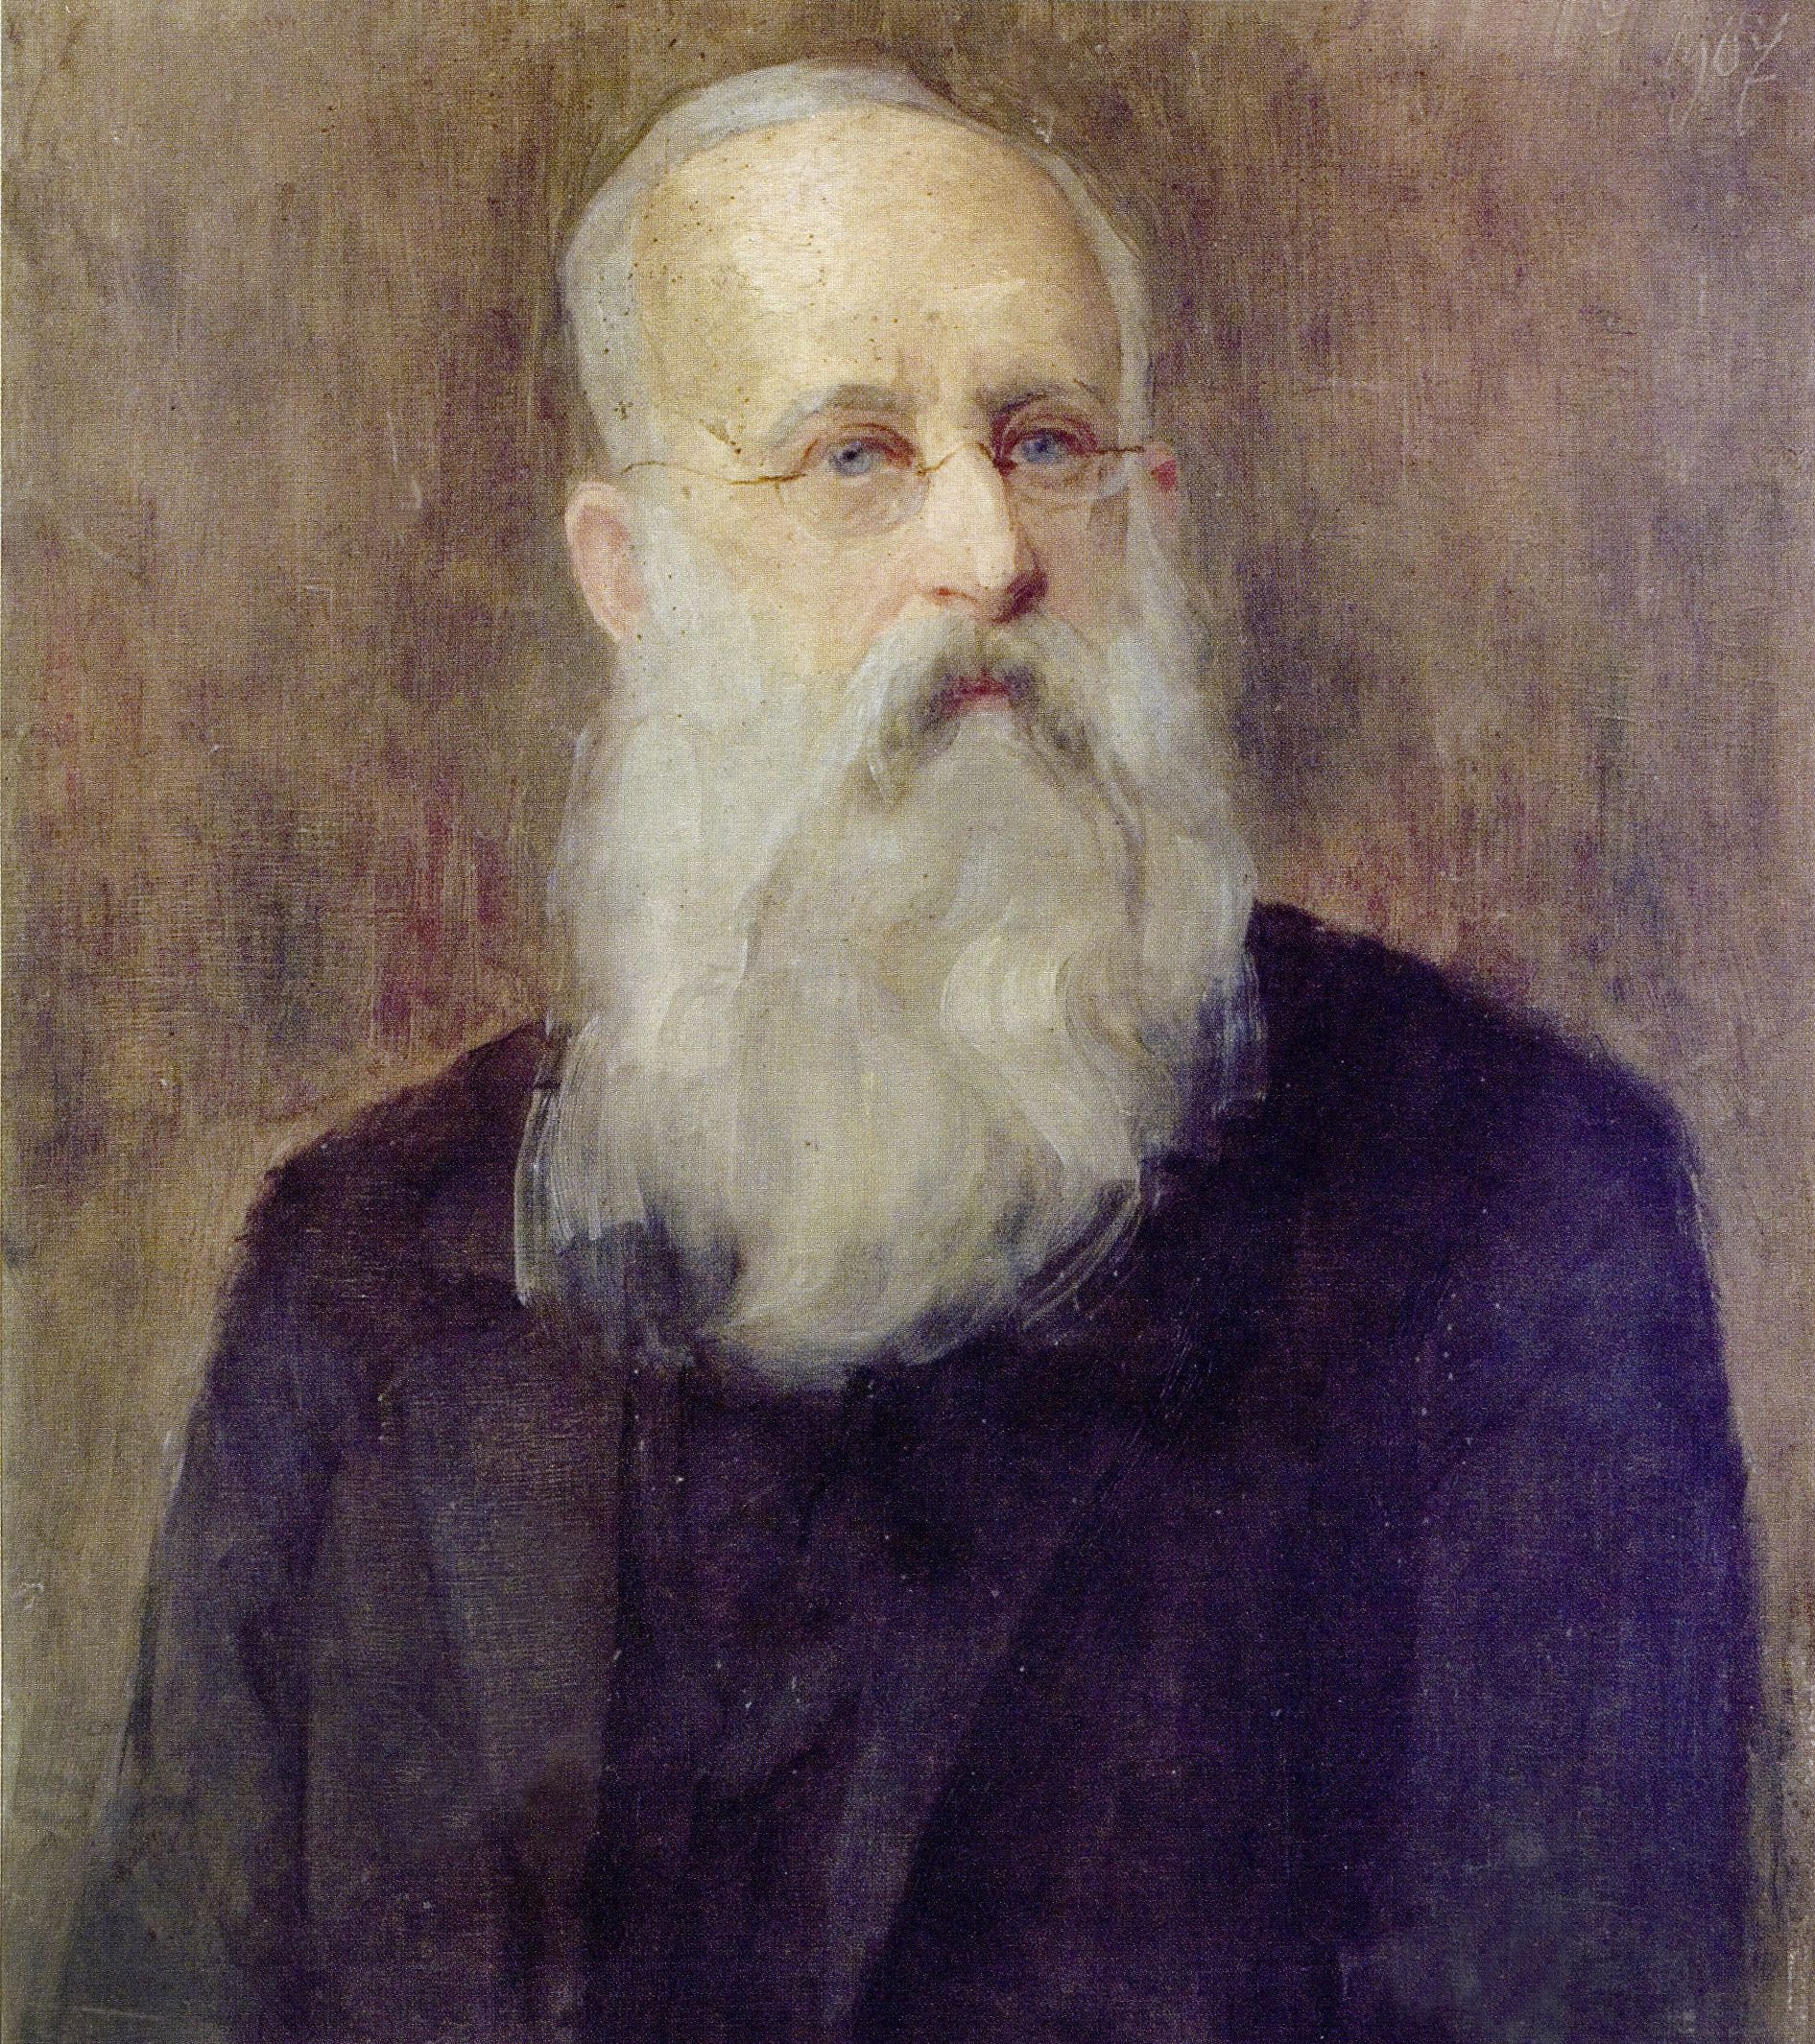 Анєля Пайонкувна. Мєчислав Павліковський, 1907;олія, полотно; ЛНГМ